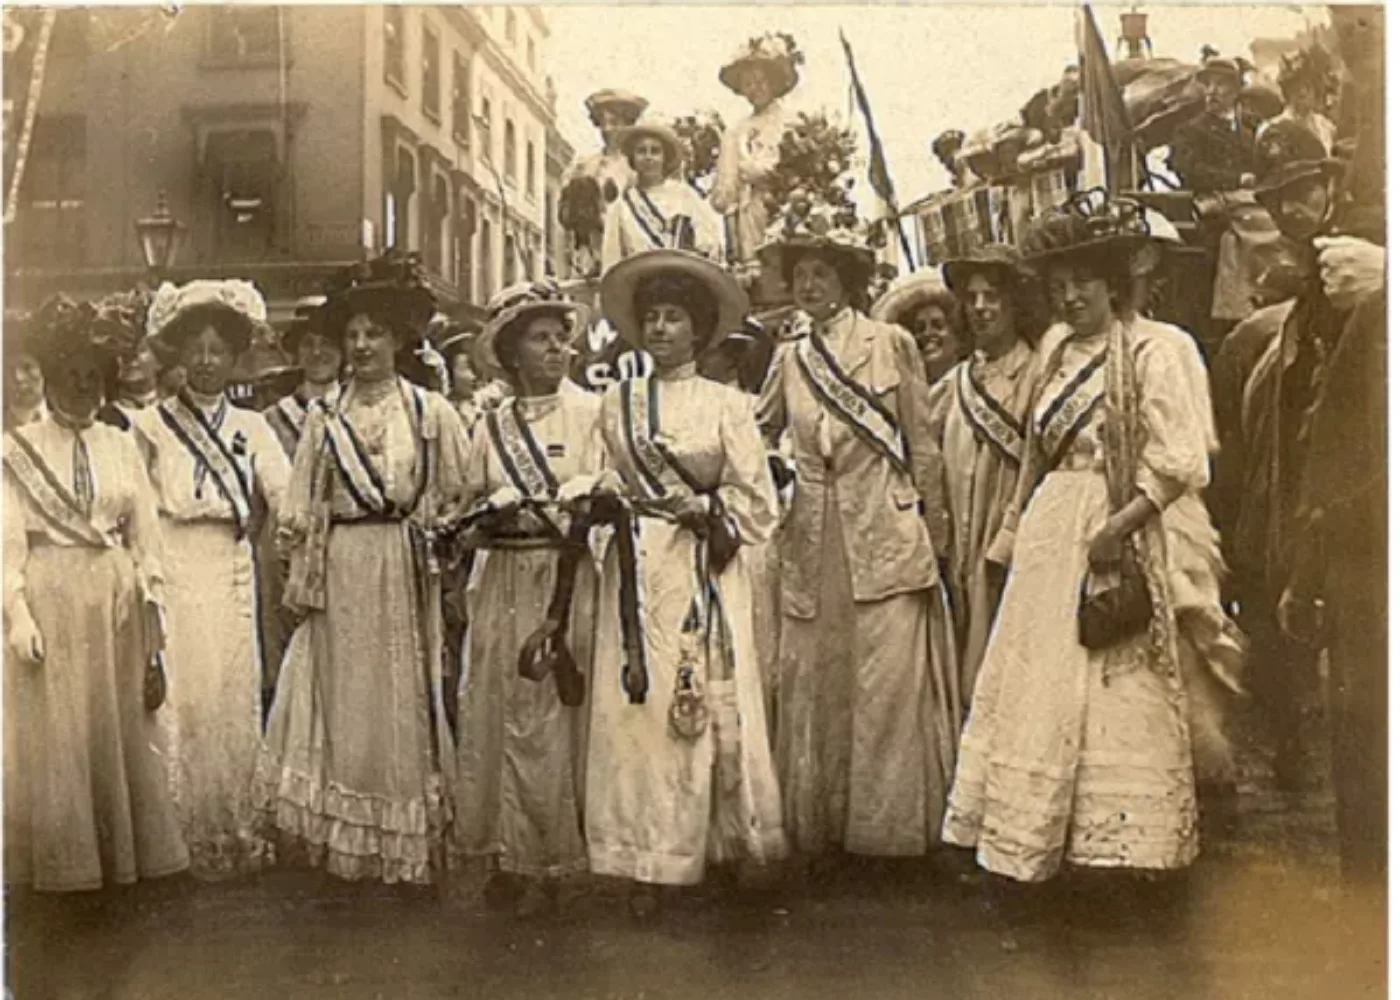 suffragetes fashion